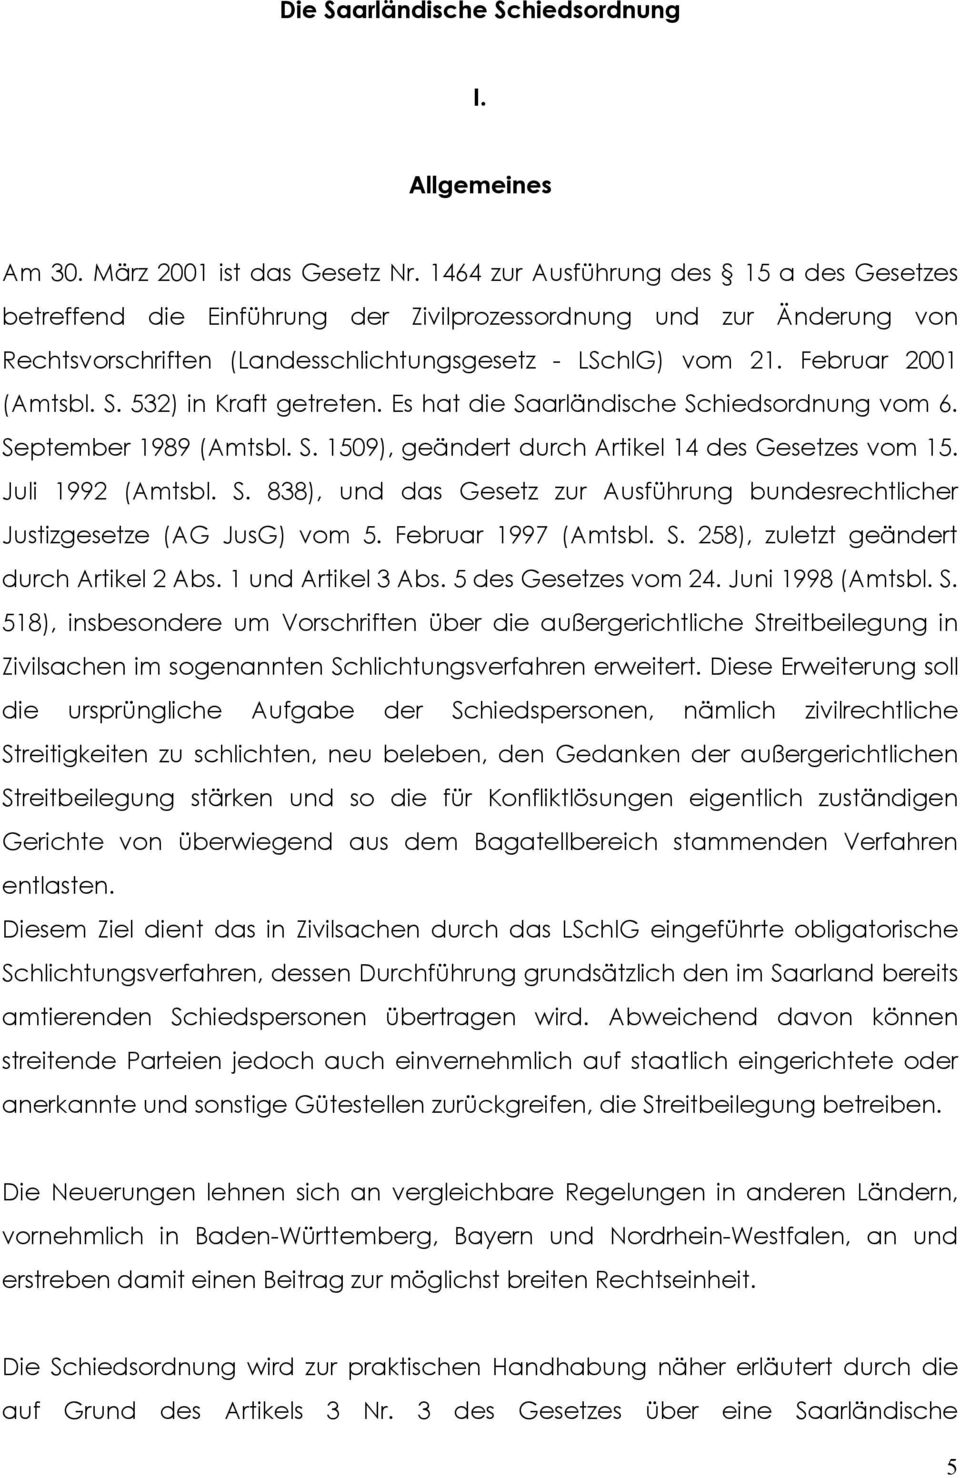 532) in Kraft getreten. Es hat die Saarländische Schiedsordnung vom 6. September 1989 (Amtsbl. S. 1509), geändert durch Artikel 14 des Gesetzes vom 15. Juli 1992 (Amtsbl. S. 838), und das Gesetz zur Ausführung bundesrechtlicher Justizgesetze (AG JusG) vom 5.